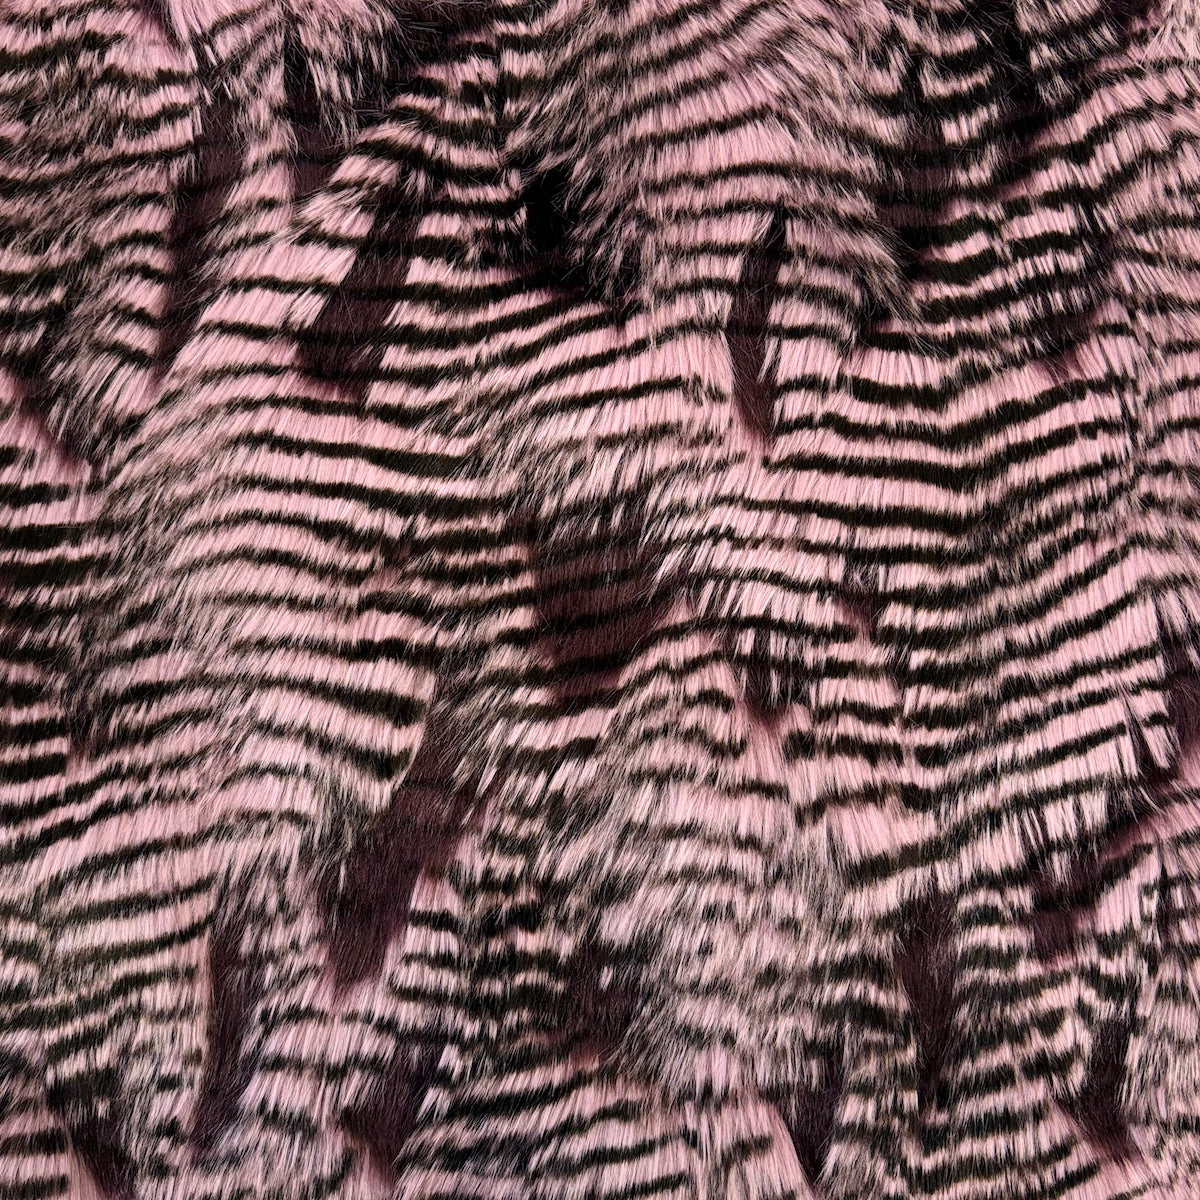 Tela de piel sintética de plumas de puercoespín morado lavanda 